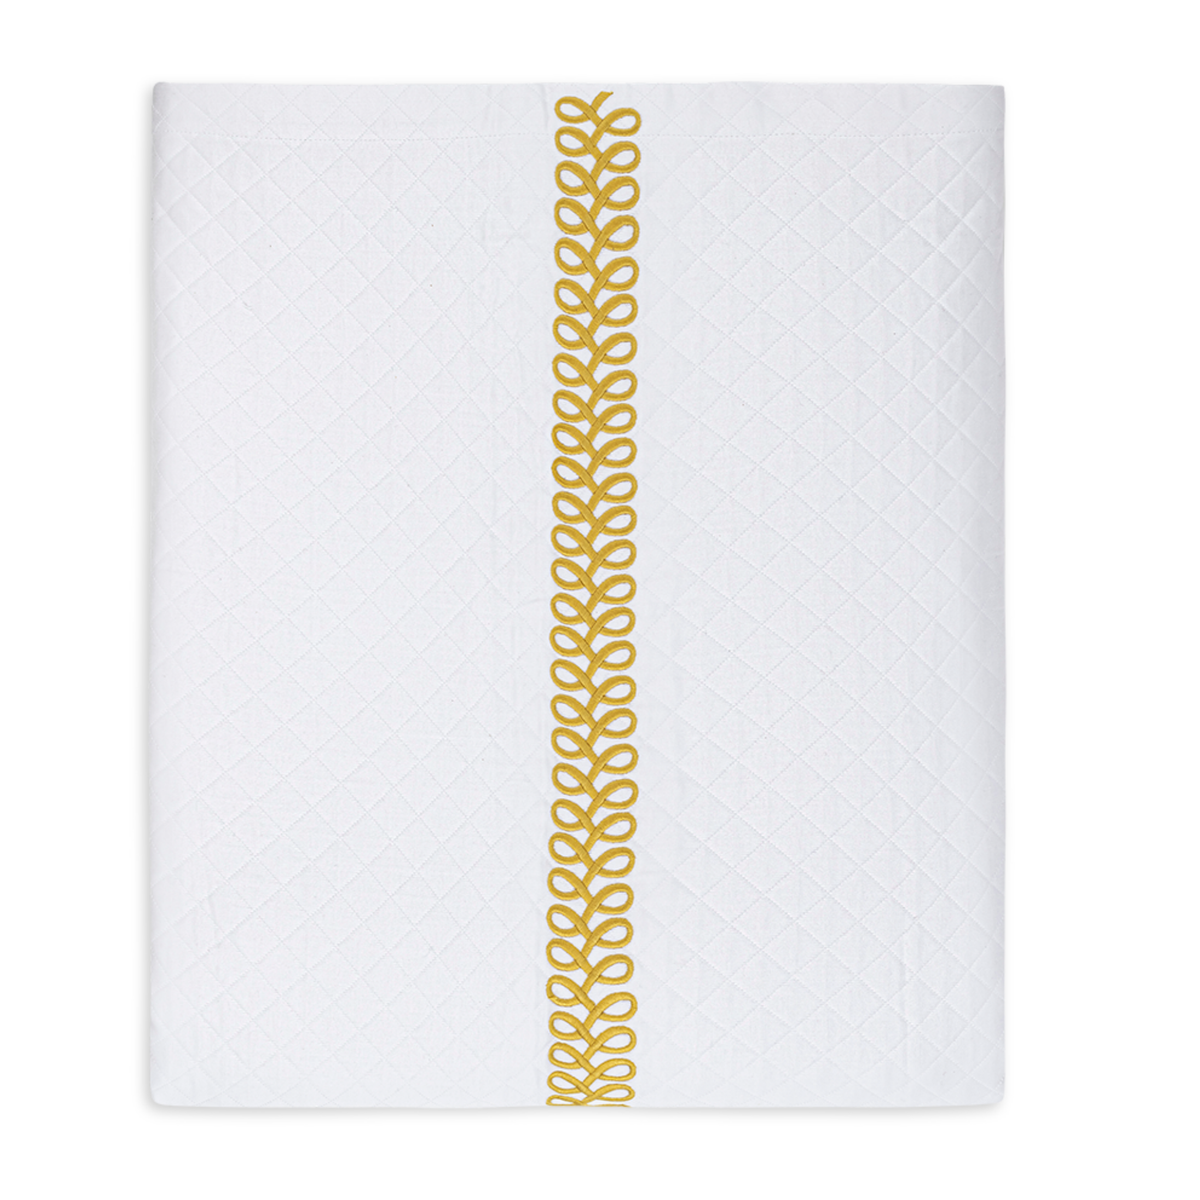 Folded Coverlet of Matouk Schumacher Astor Braid Matelassé Bedding in Lemon Color